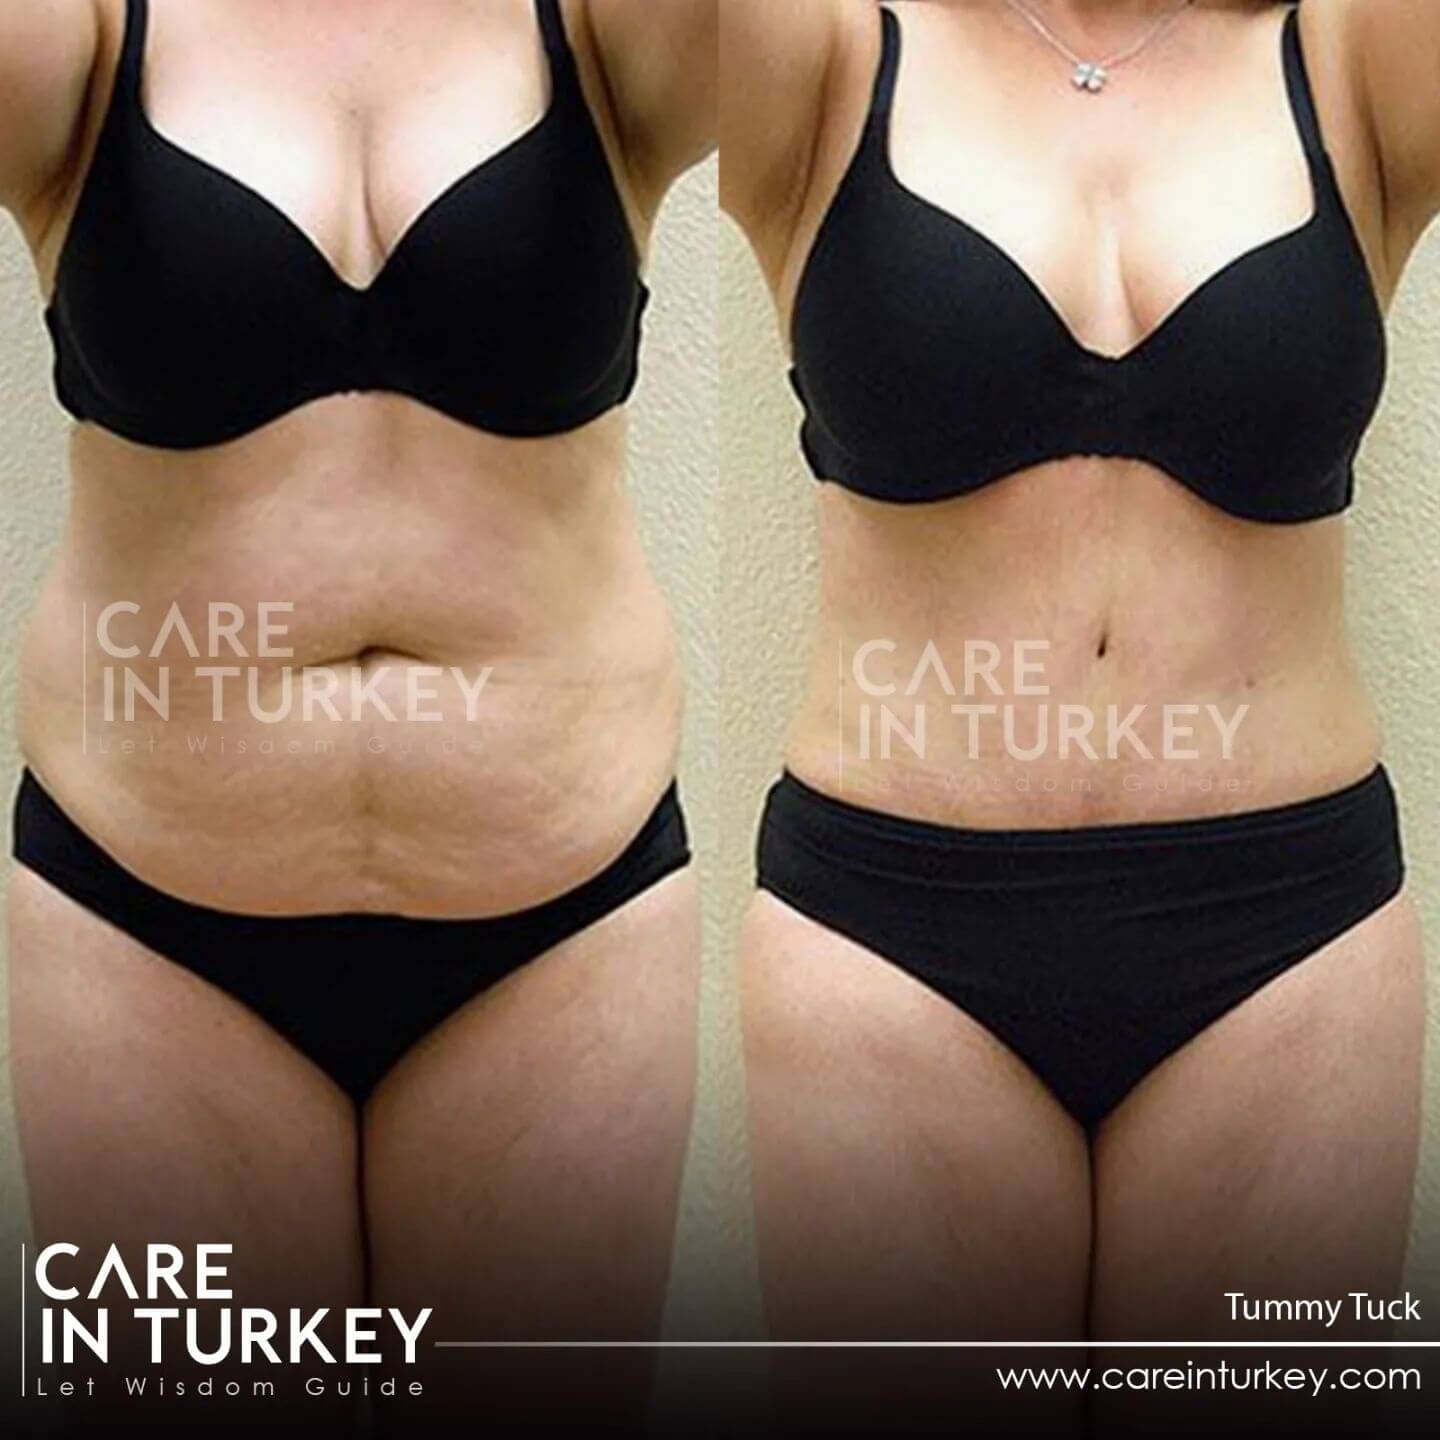 Before & After Fleur-de-Lis Tummy Tuck